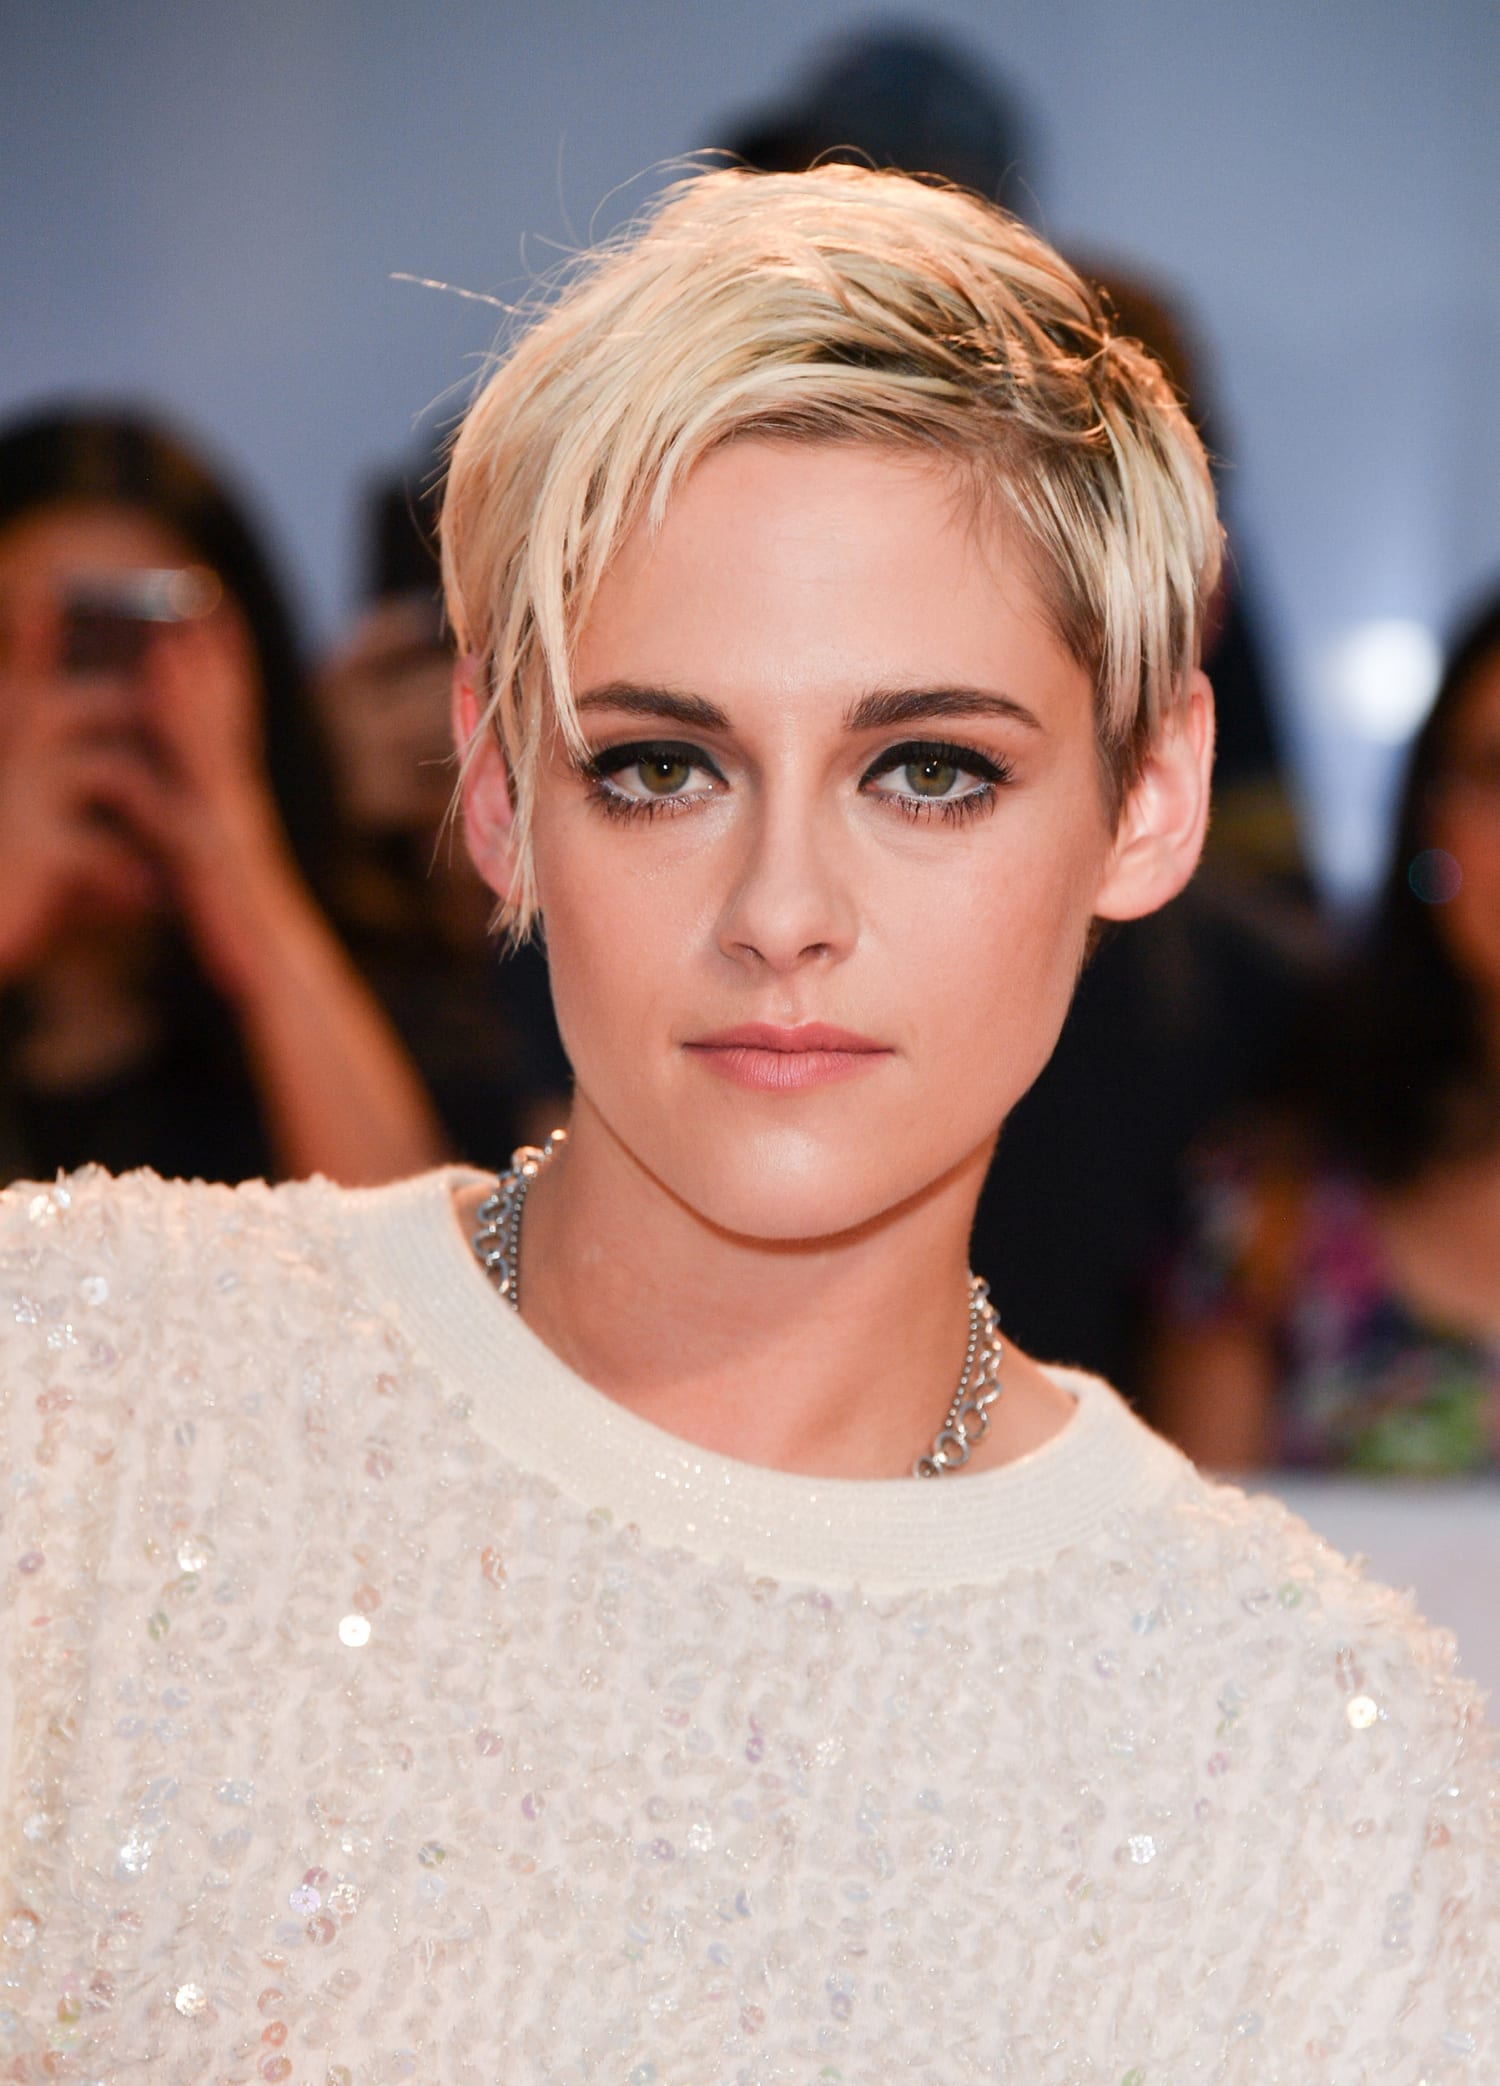 Kristen Stewart debuts platinum blond pixie cut at Toronto film festival